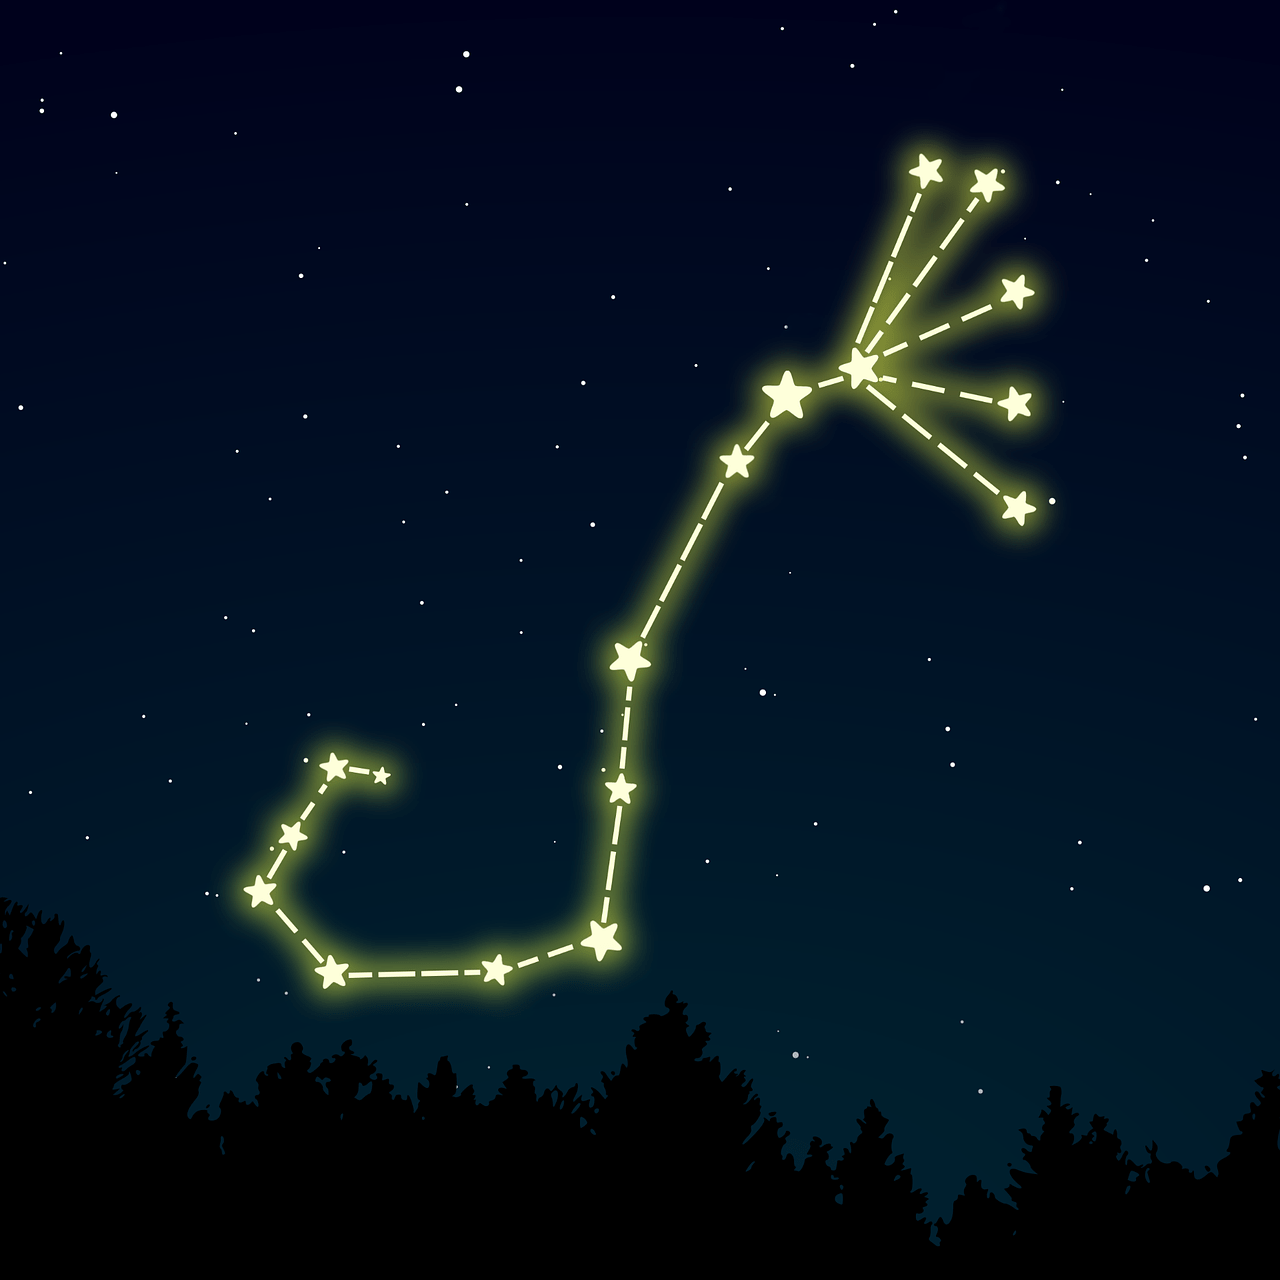 Das Sternbild Skorpion dargestellt mit einer Grafik vor einem Nachthimmel